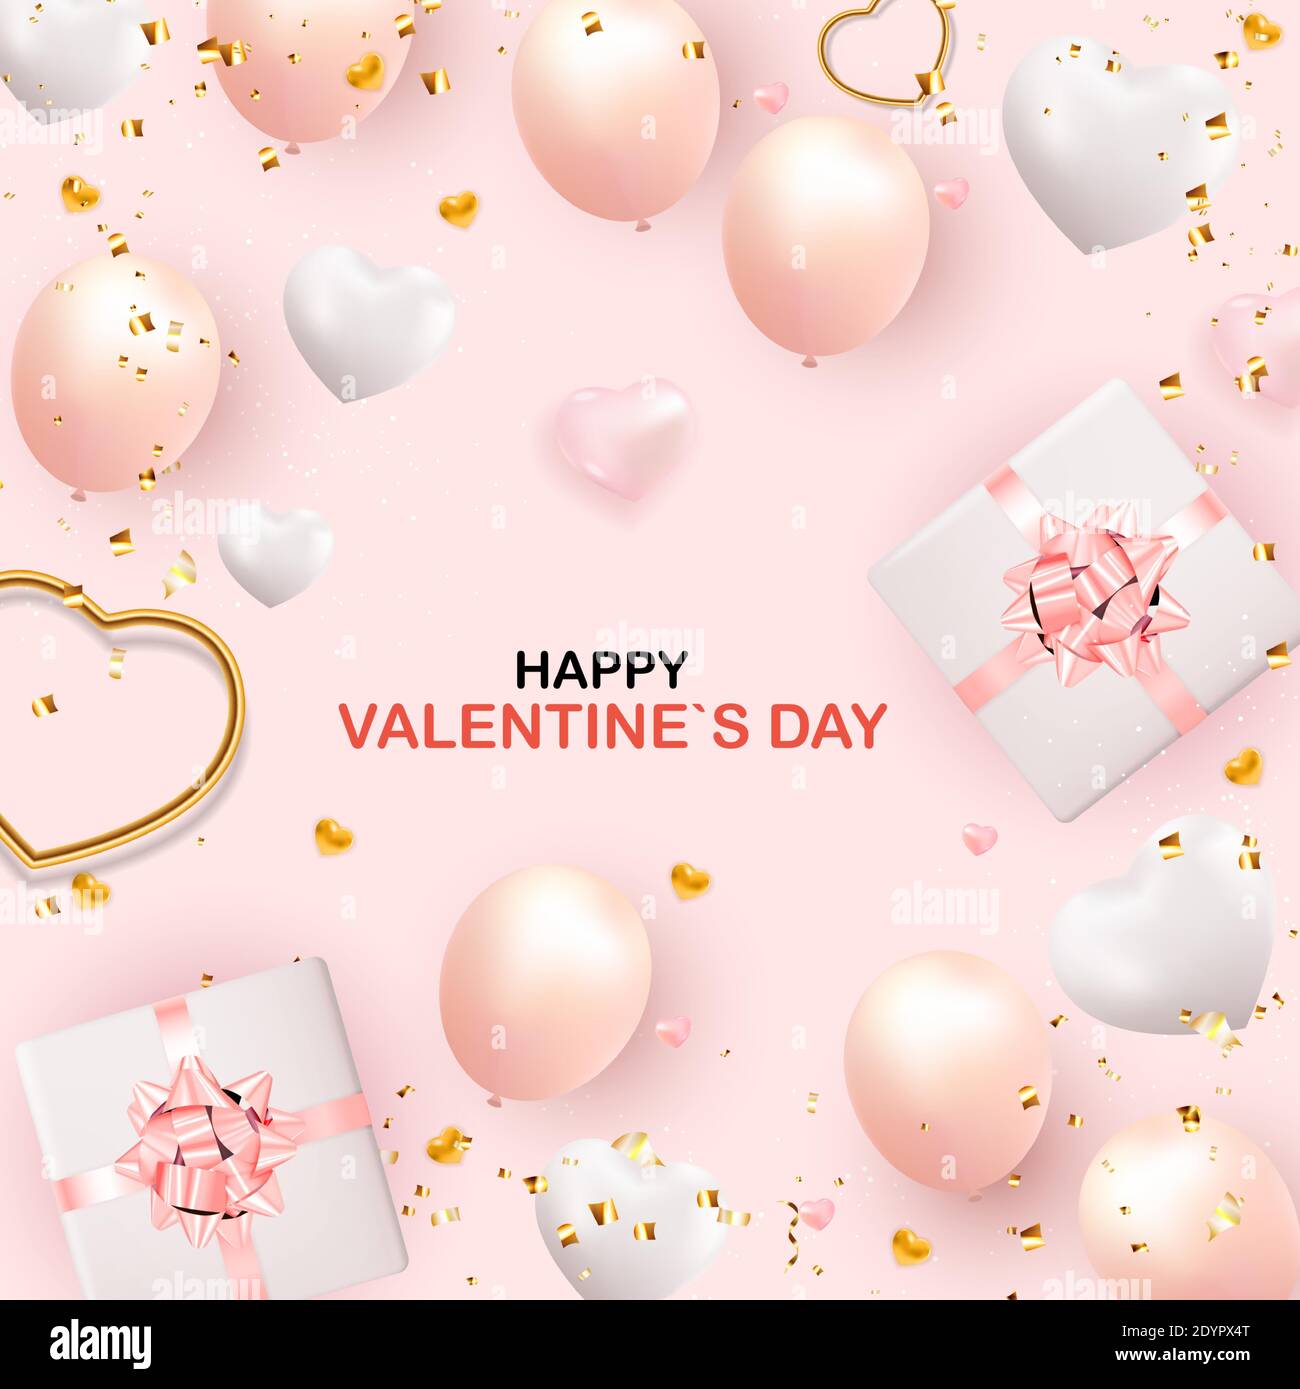 San Valentino background Design con confezione regalo realistica e cuore.  Modello per pubblicità, web, social media e annunci di moda. Poster,  volantino, saluto Immagine e Vettoriale - Alamy